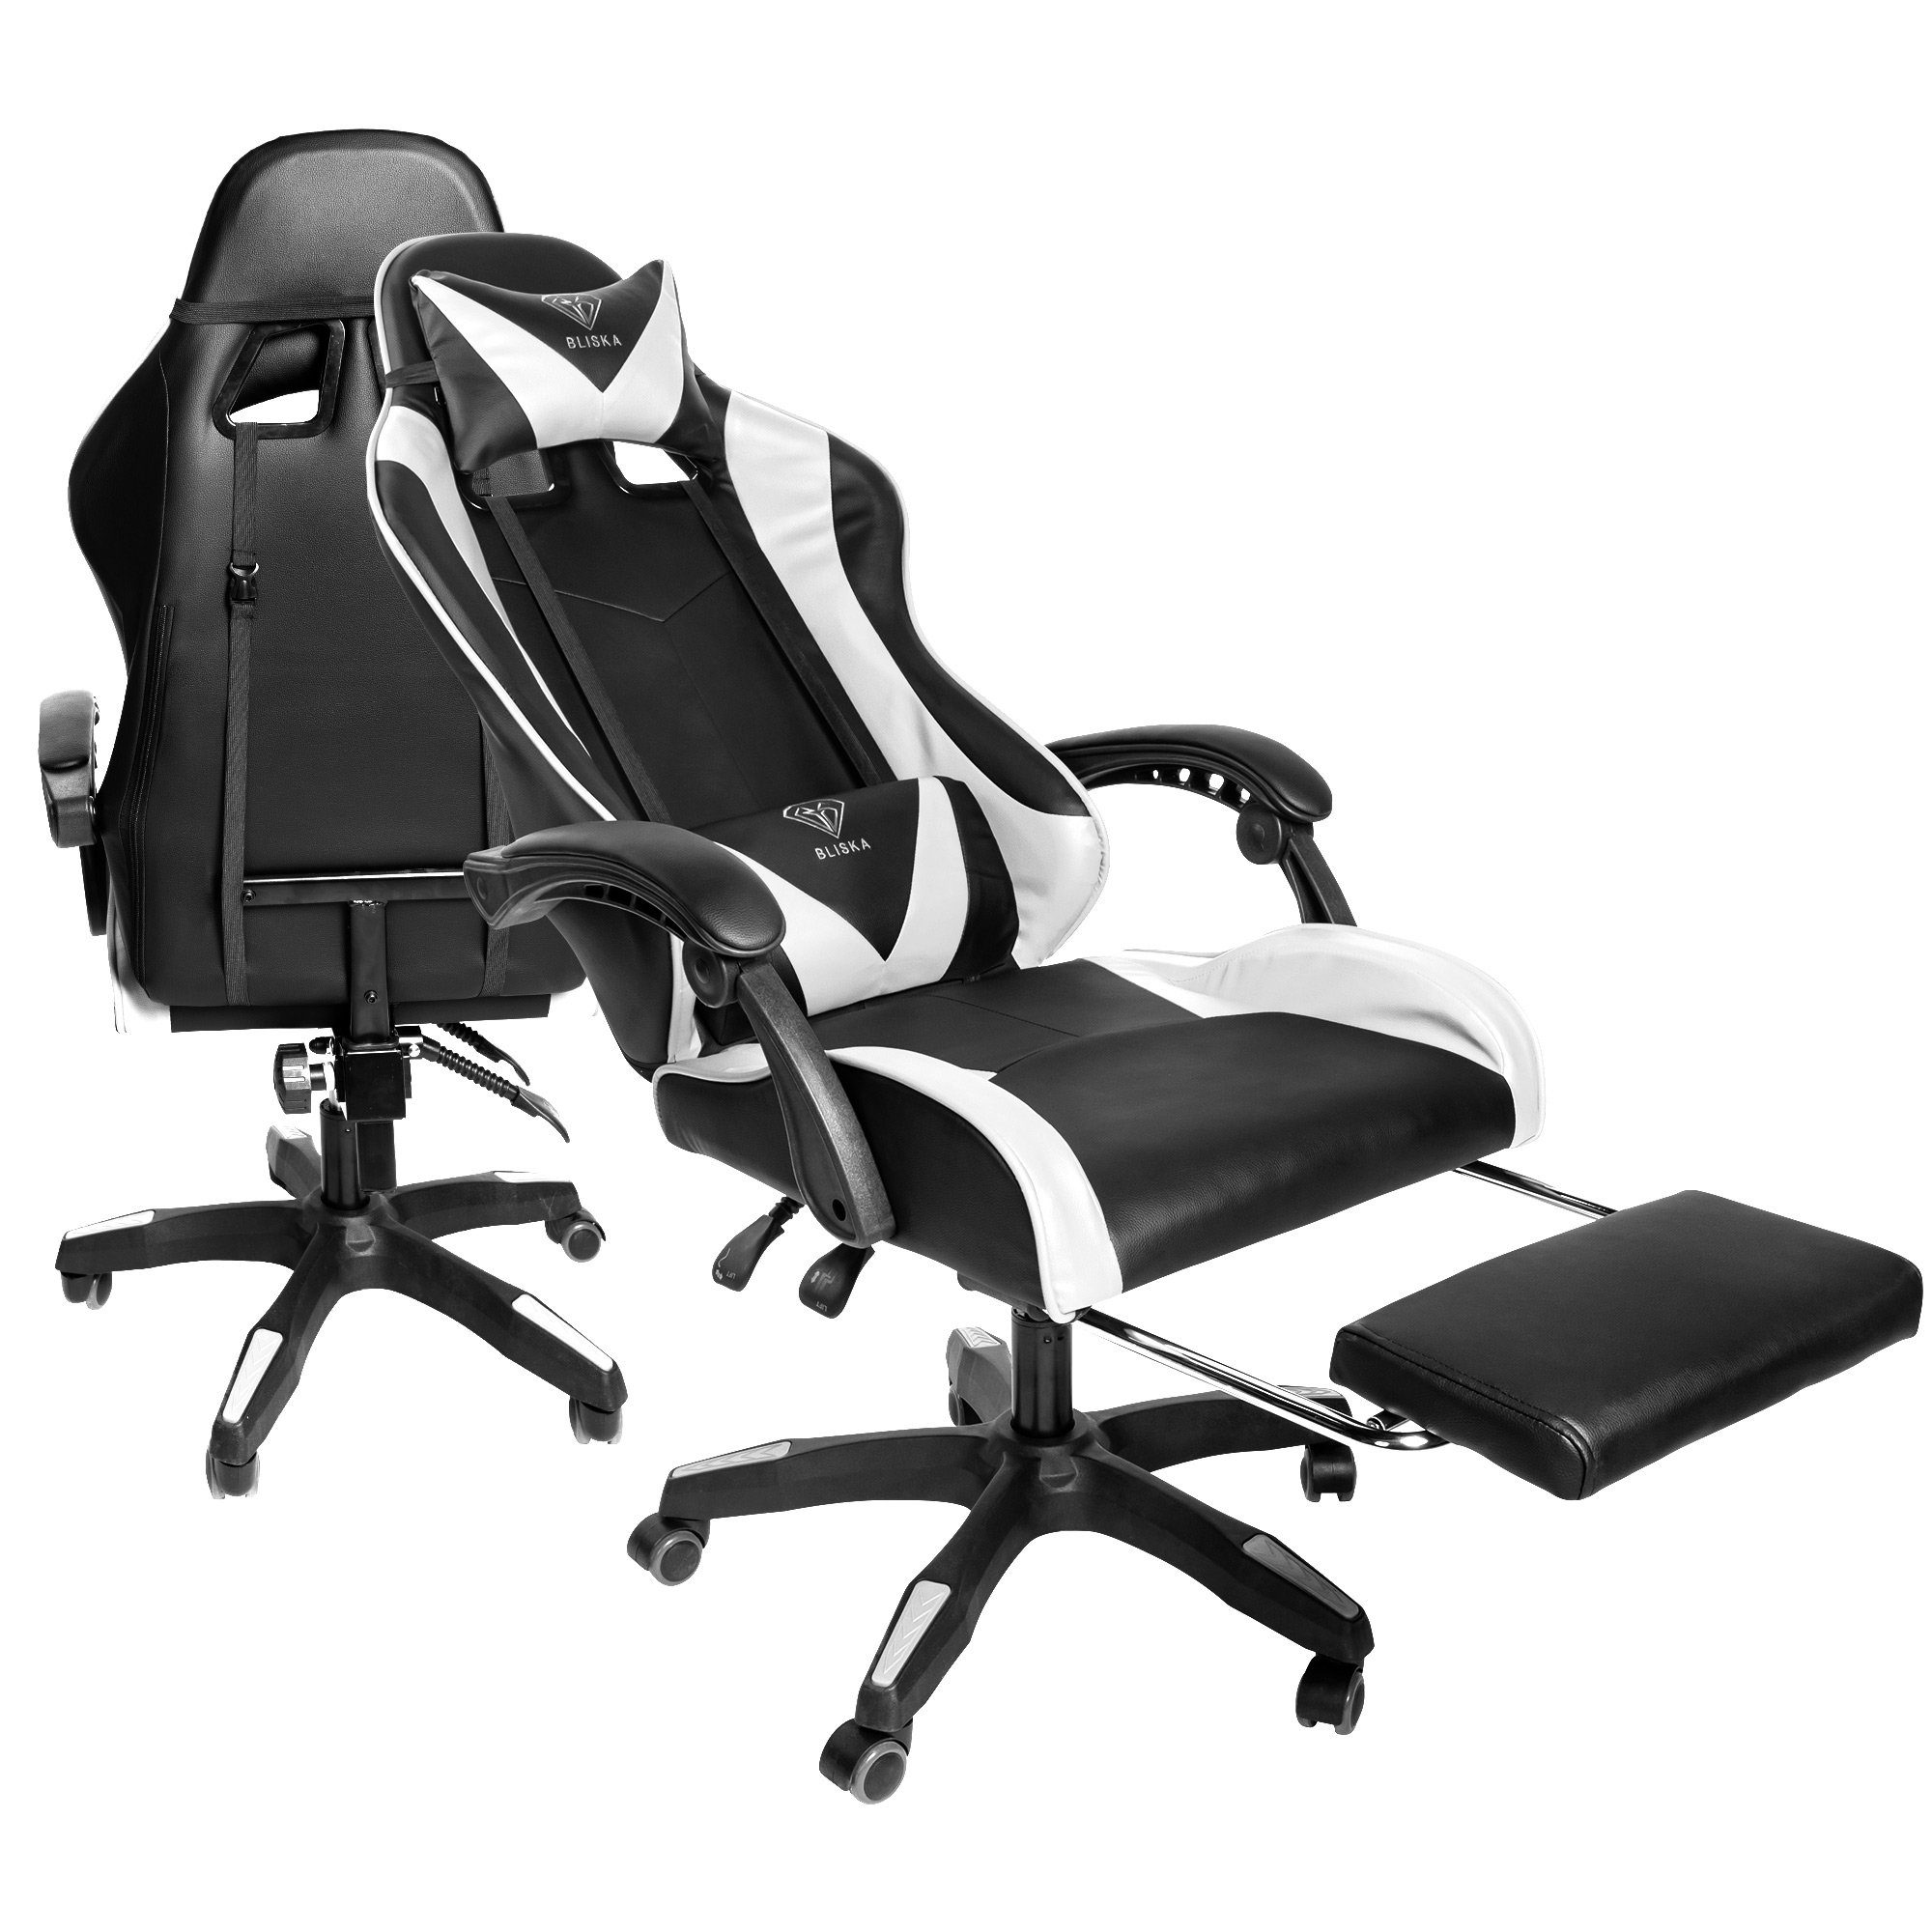 TRISENS Chefsessel Fußstütze mit Design-Armlehnen flexiblen Stuhl Chair Stück), Gaming mit Konrad (1 Schwarz/Weiß Gaming